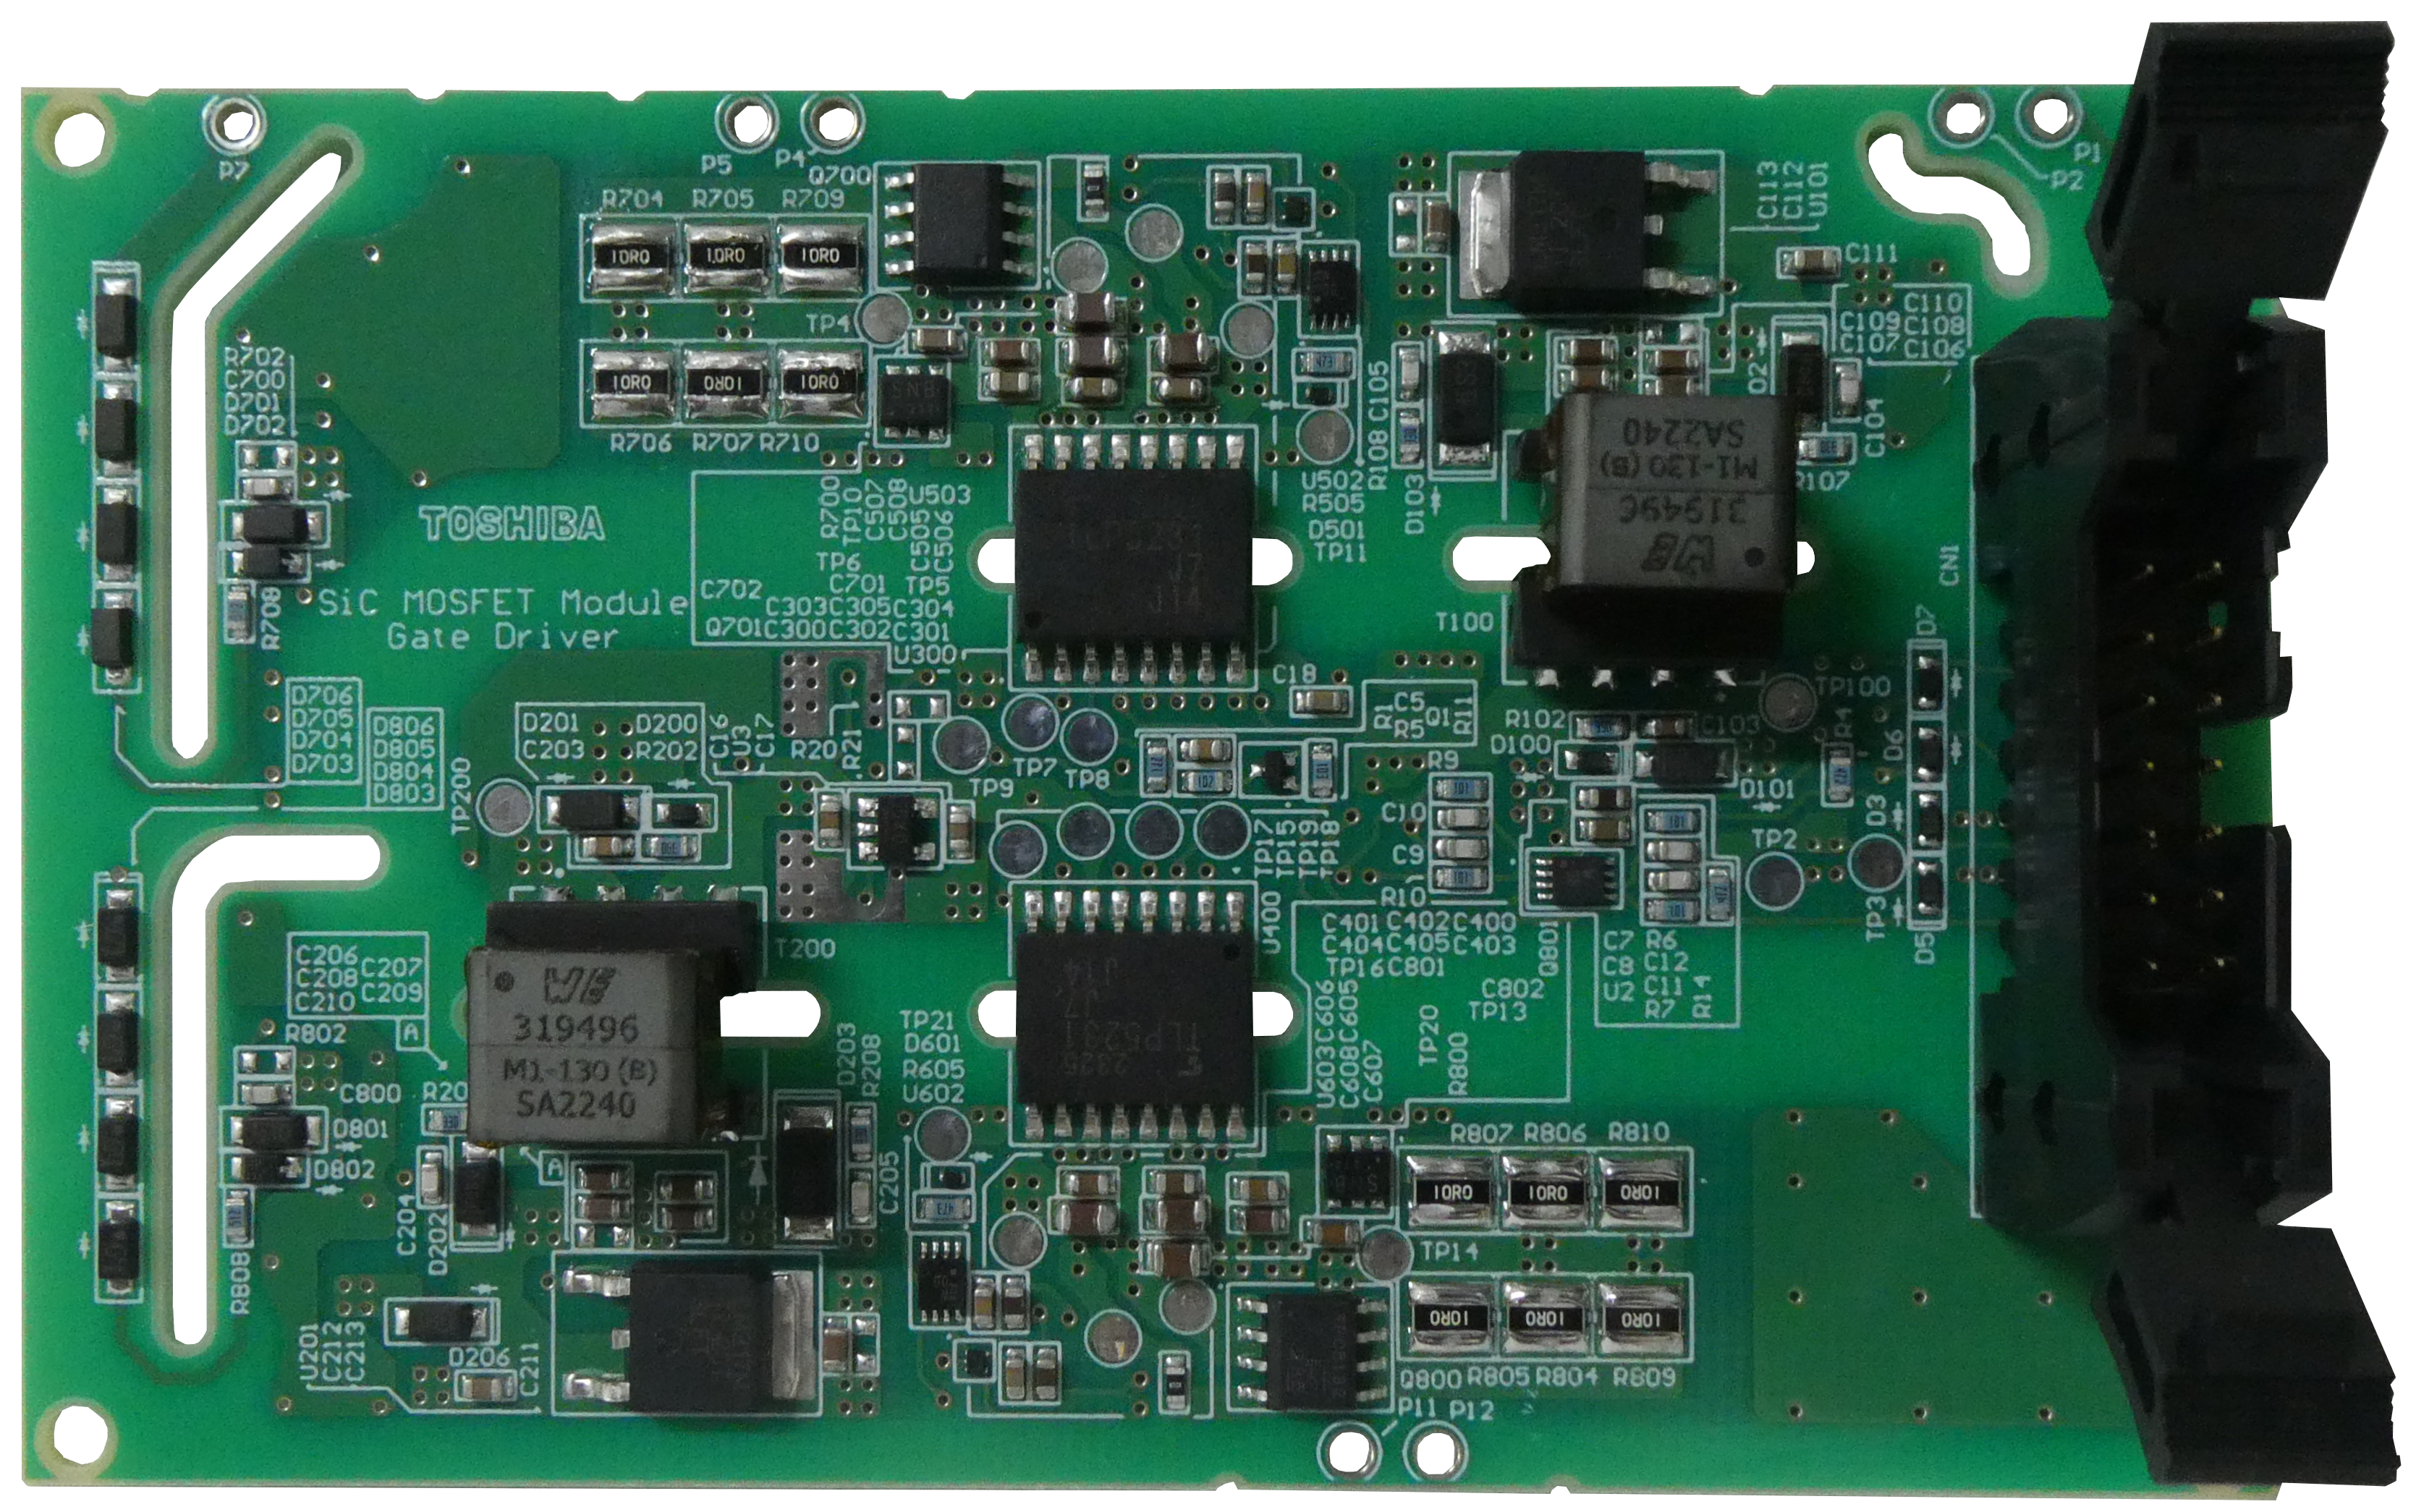 これは、SiC MOSFETモジュール用ゲートドライバー の画像です。